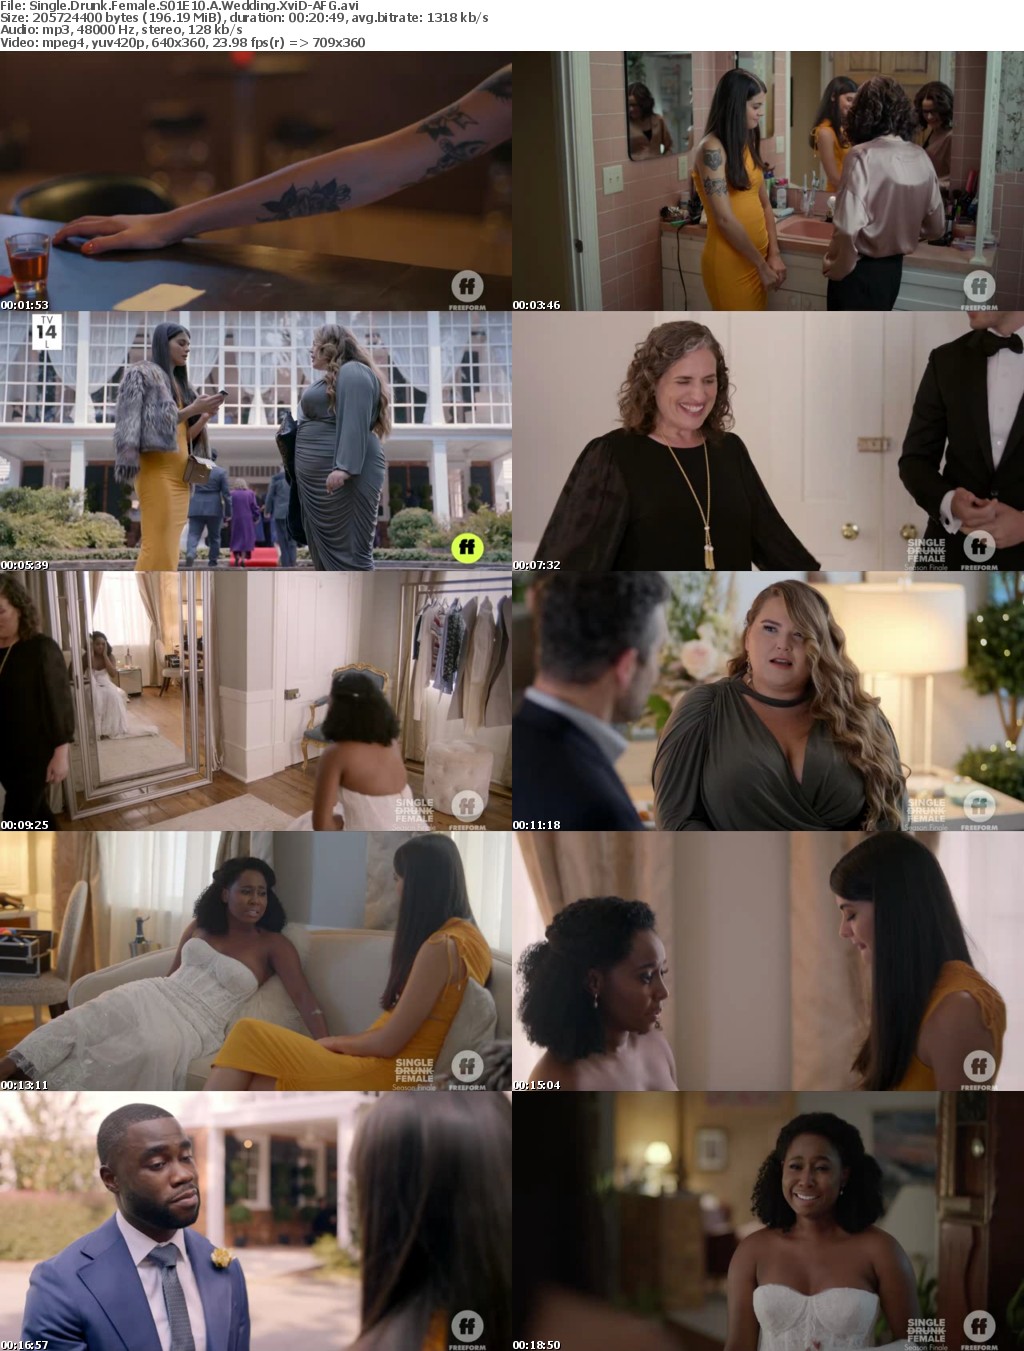 Single Drunk Female S01E10 A Wedding XviD-AFG